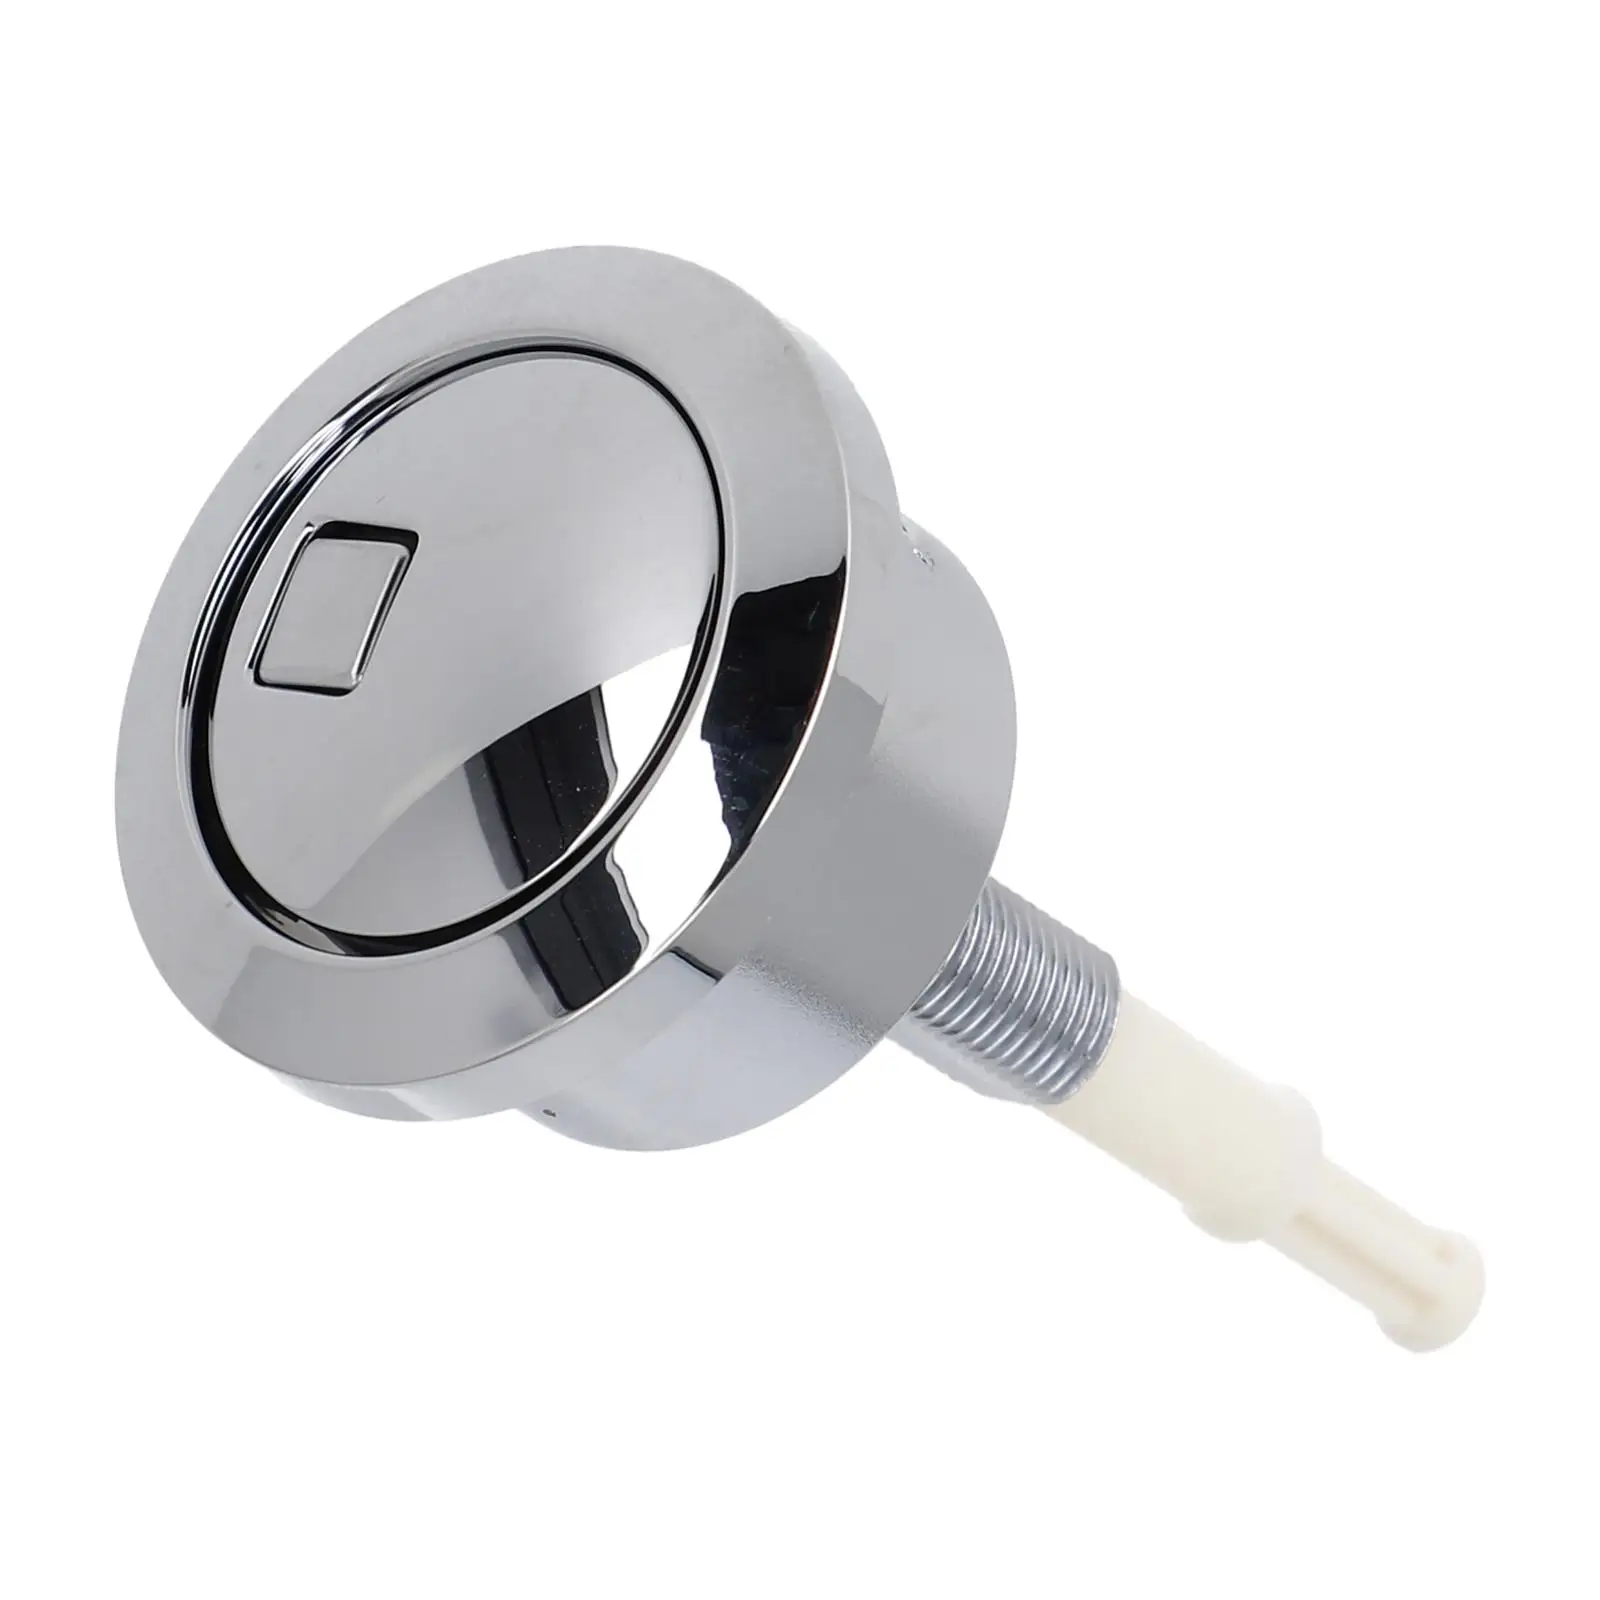 

Кнопка для туалета для Geberit типа 280, сменная кнопка с двойным приводом 274,006. Кг. 1 серебряная хромированная кнопка ABS